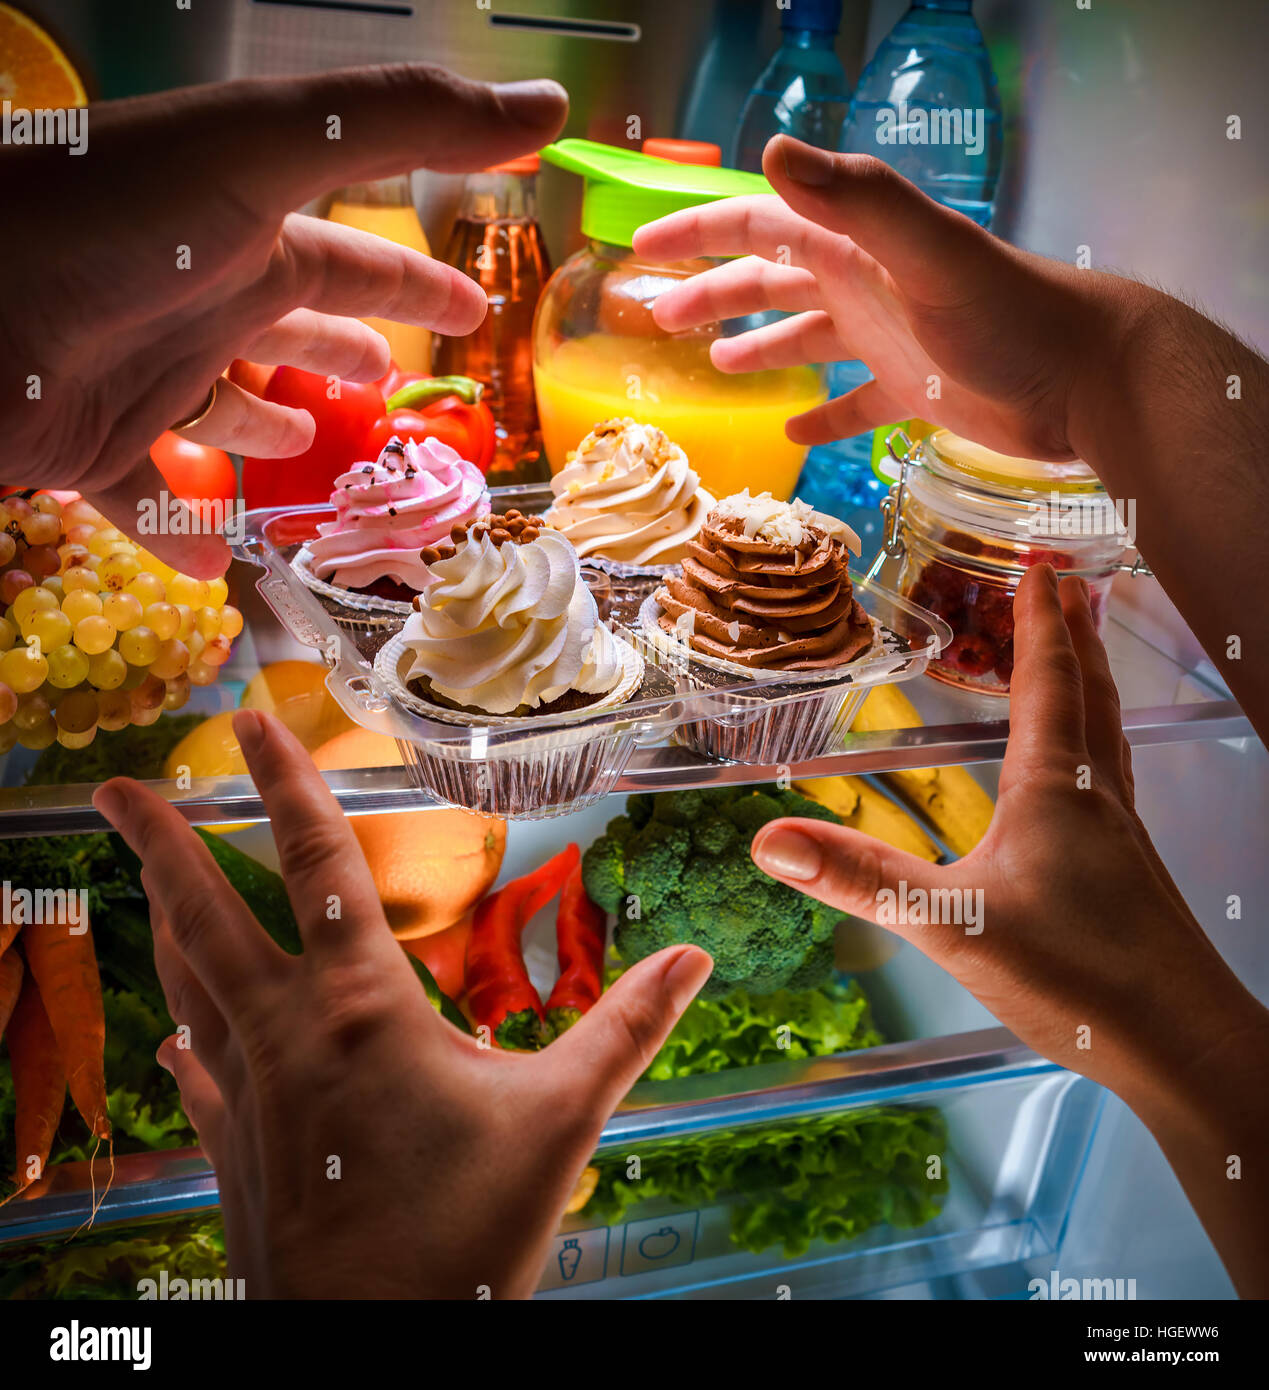 Le mani umane raggiungendo per la torta dolce di notte nel frigorifero aperto Foto Stock